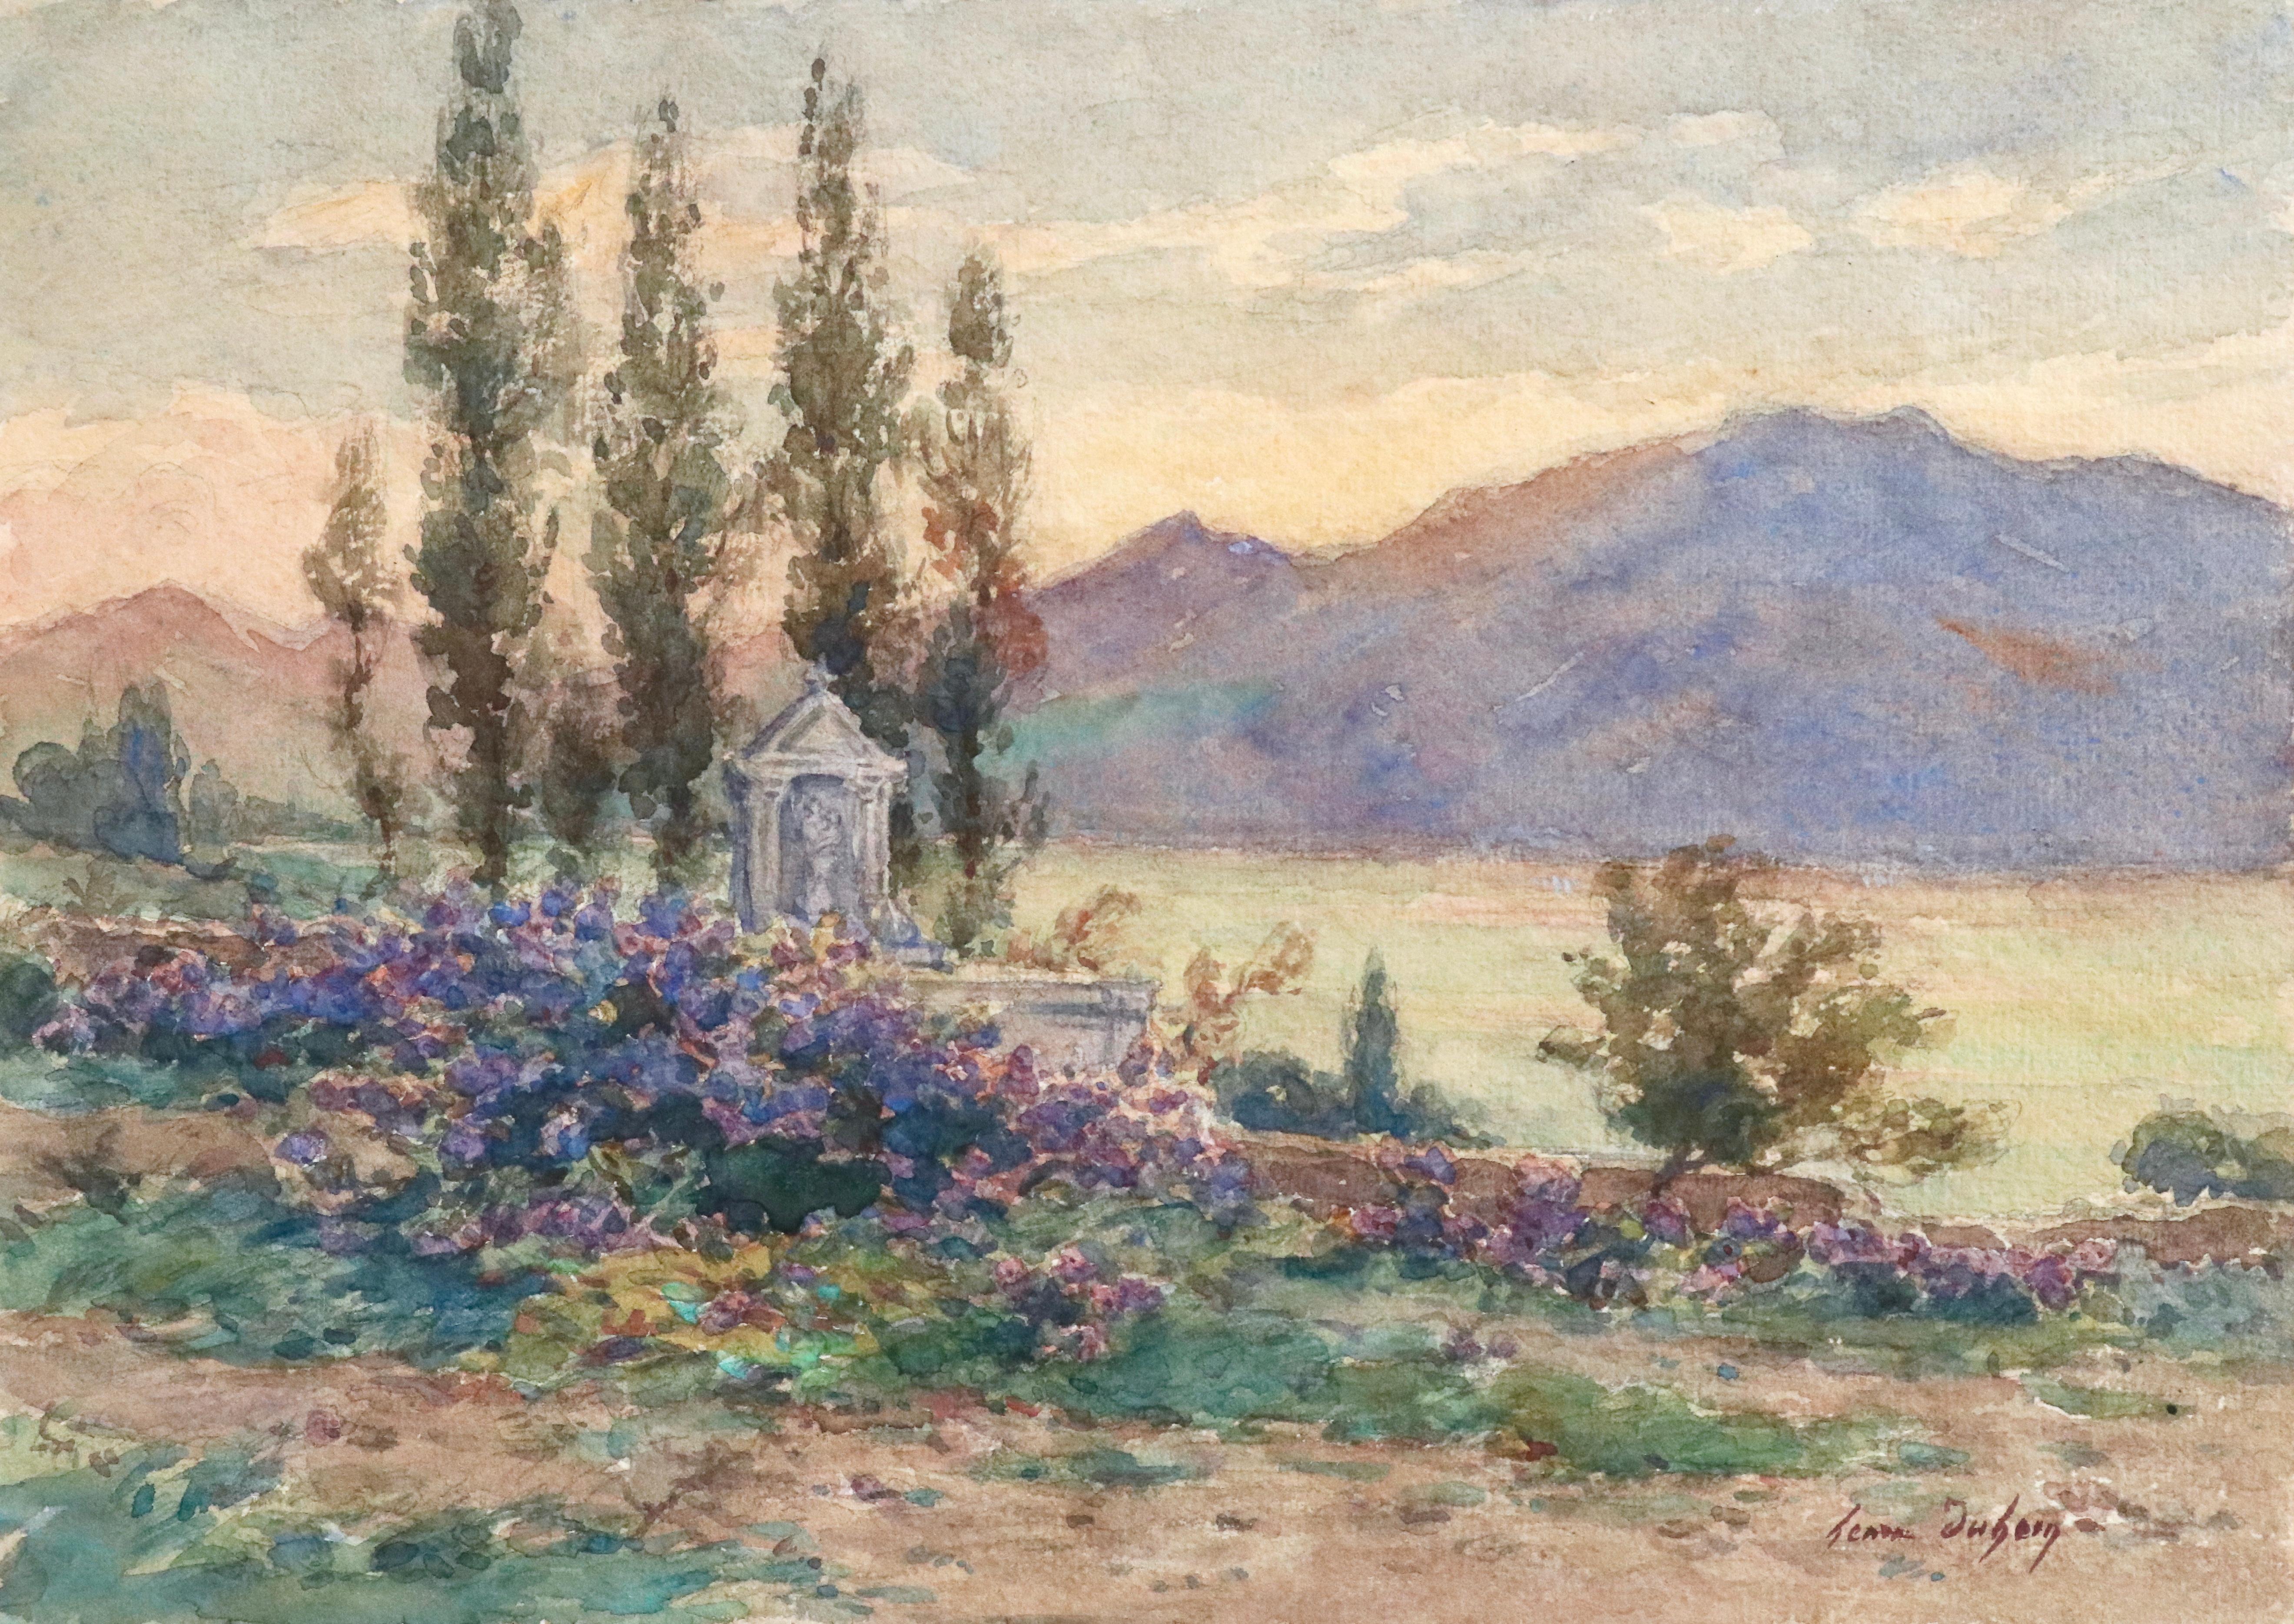 Près du Lac - 19th Century Watercolor, Mountain & Lake Landscape by Henri Duhem